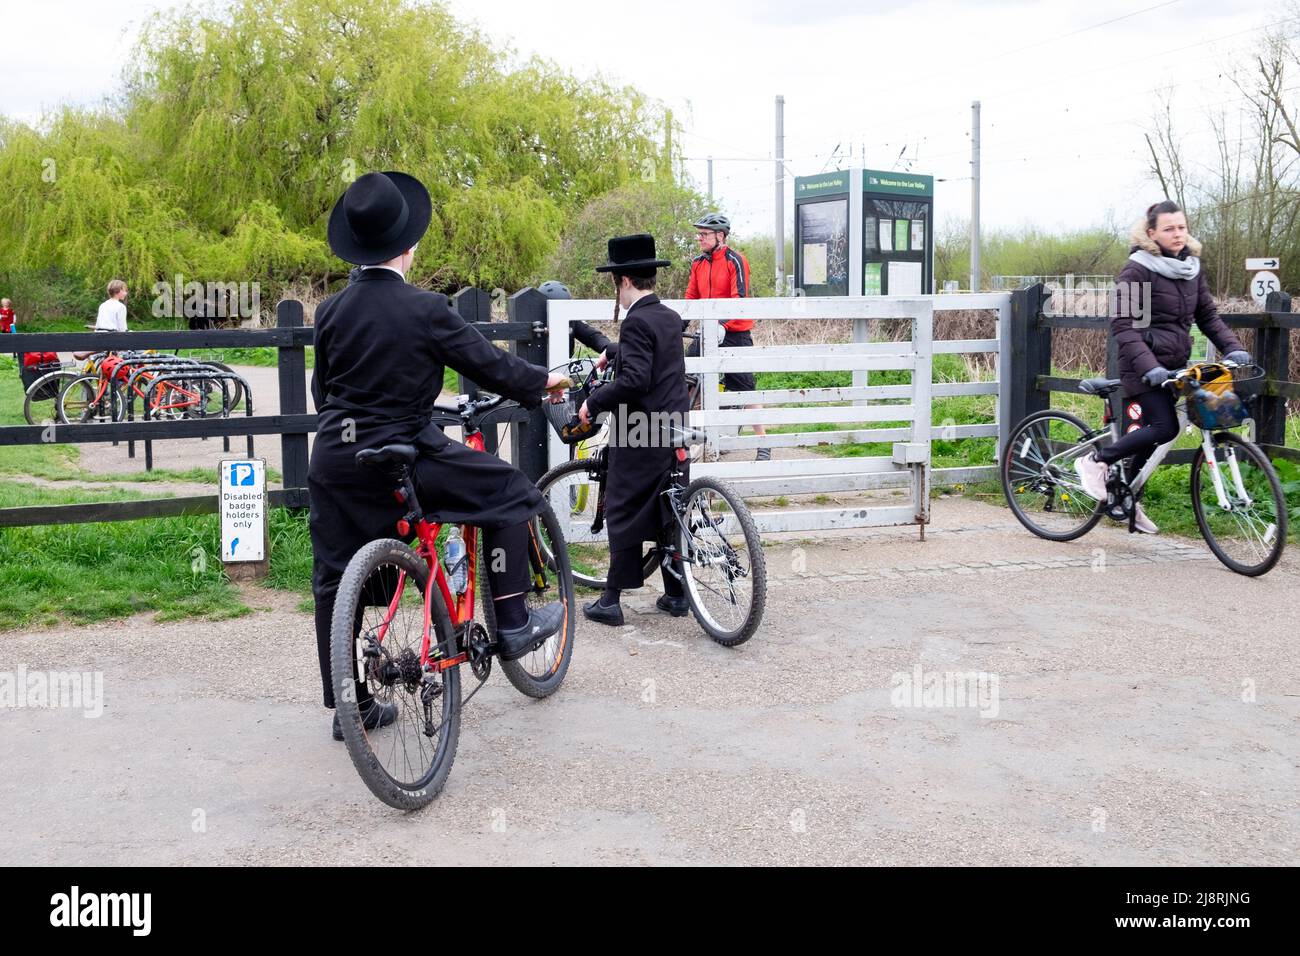 Des garçons juifs orthodoxes en vélo sur une piste cyclable traversant la porte de la réserve naturelle Walthamstow Wetlands à Londres, Angleterre KATHY DEWITT Banque D'Images